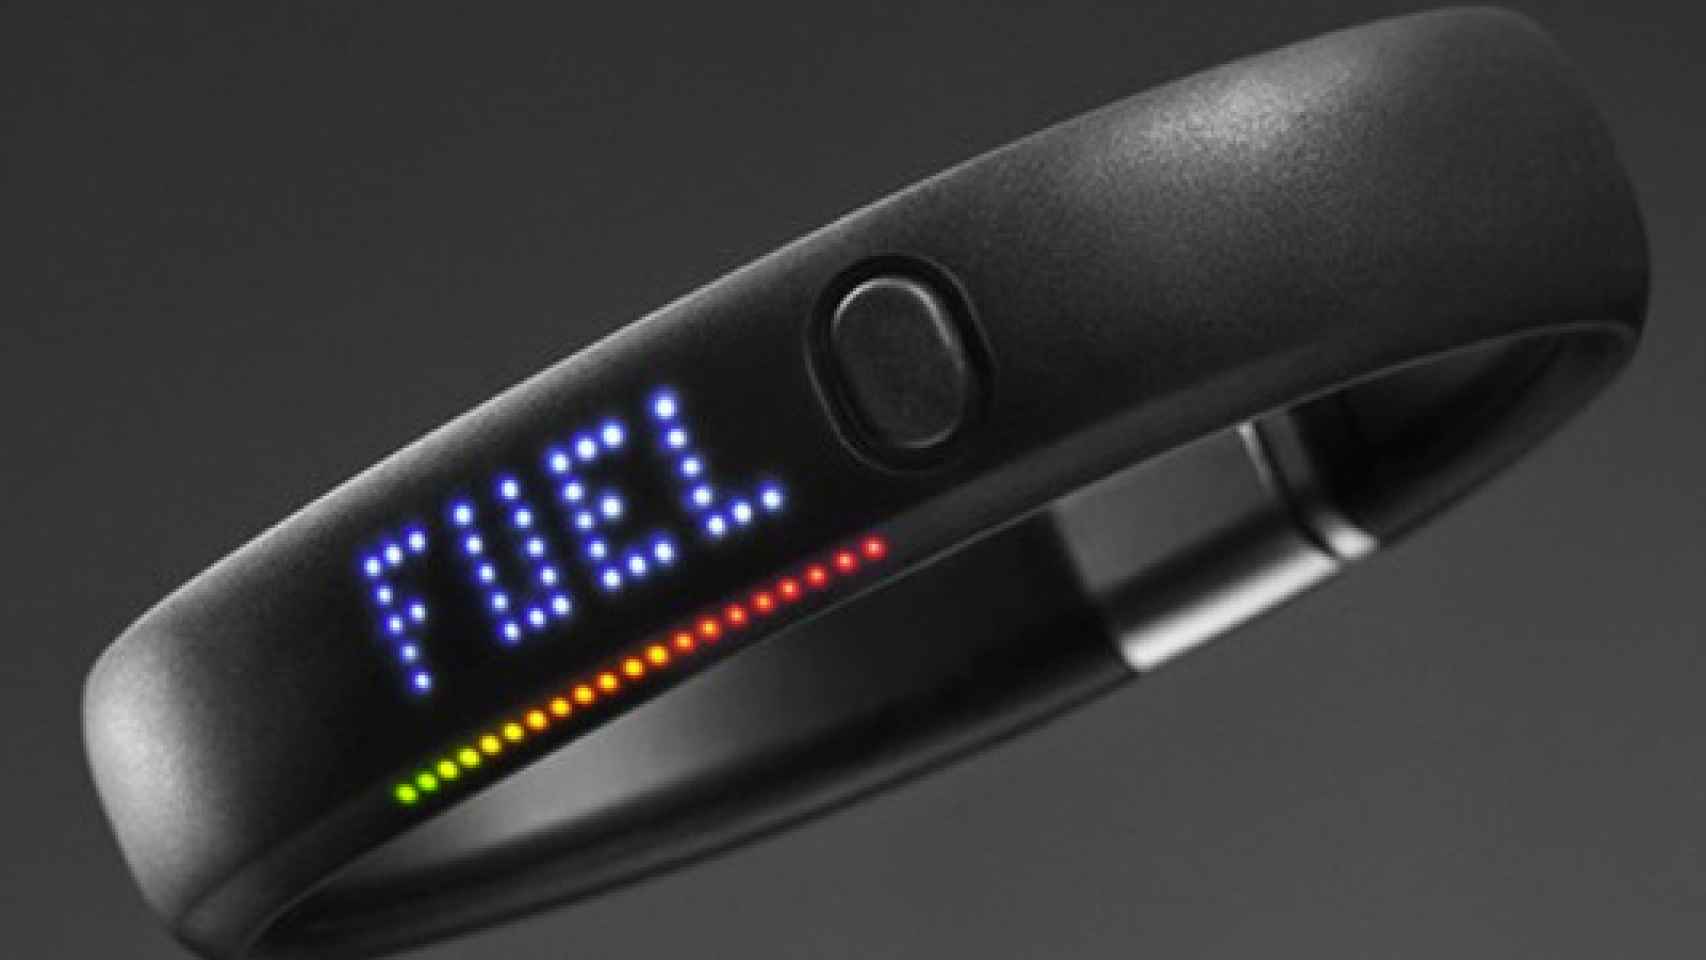 Nike+ FuelBand, pulsera para medir la actividad física con app de iPhone